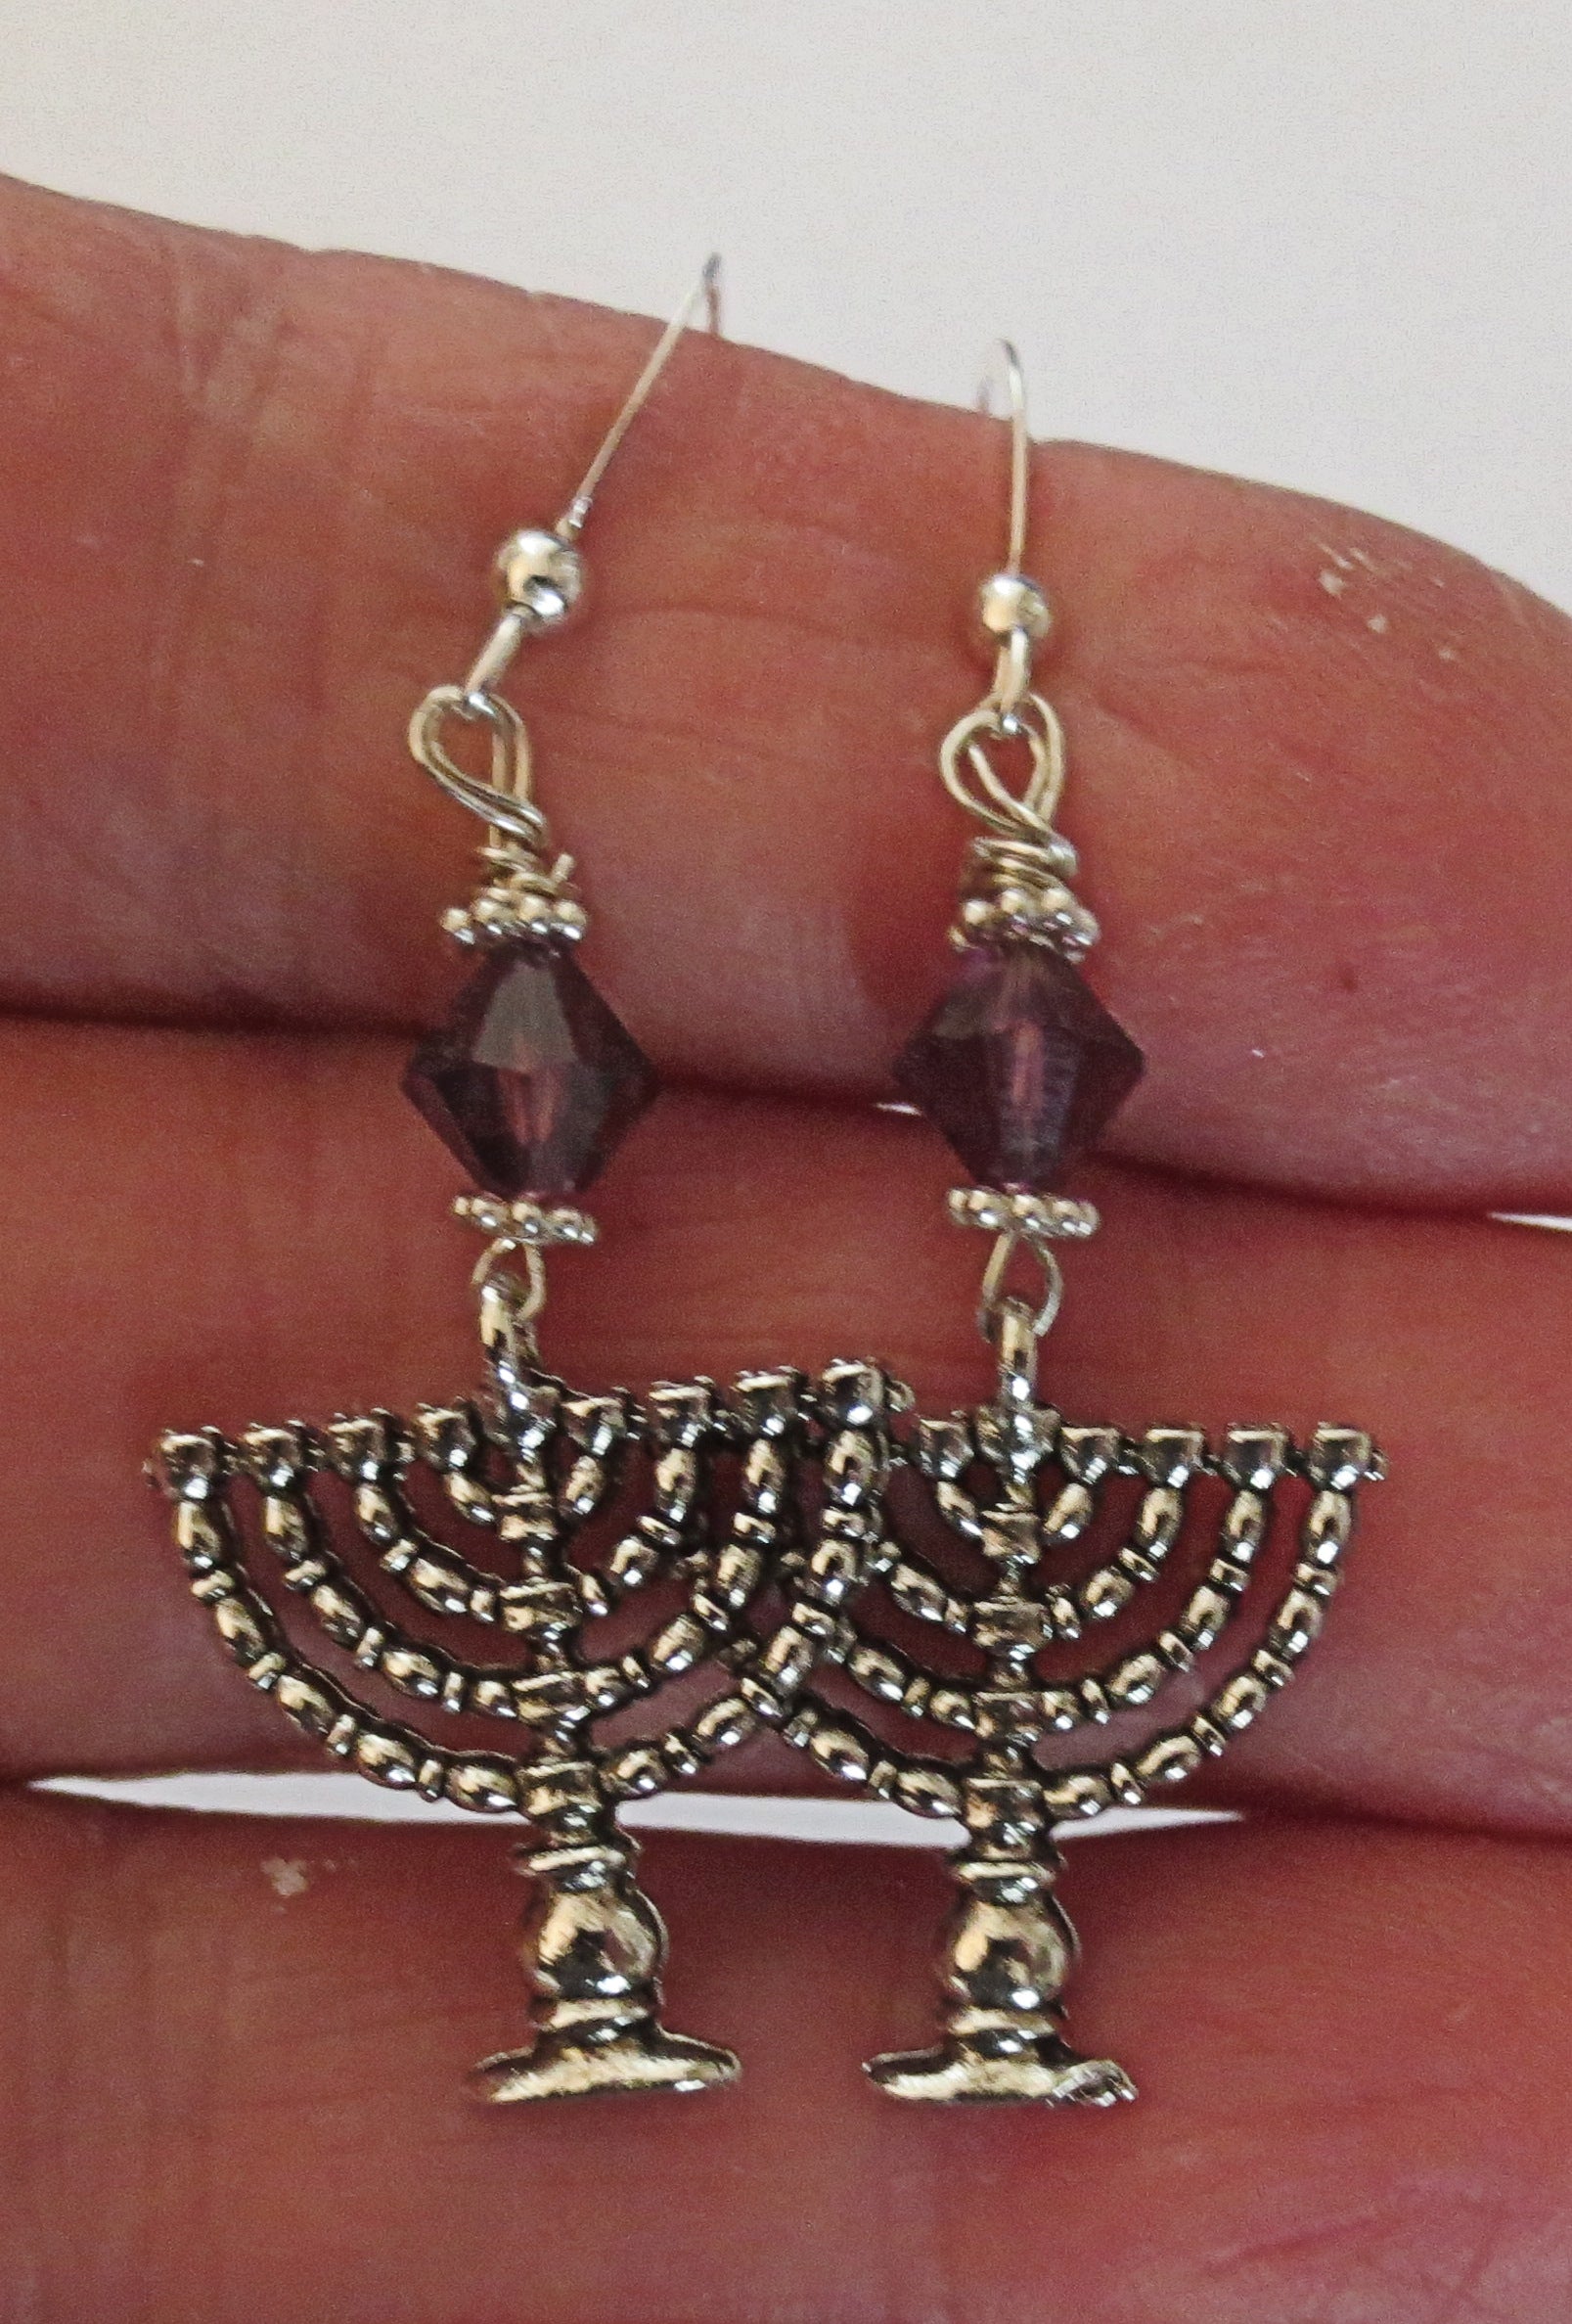 hanukkah or chanukah swarovski crystals silver earrings menorahs and dreidels sterling ear wires amethyst bicones / menorahs / regular ear wires